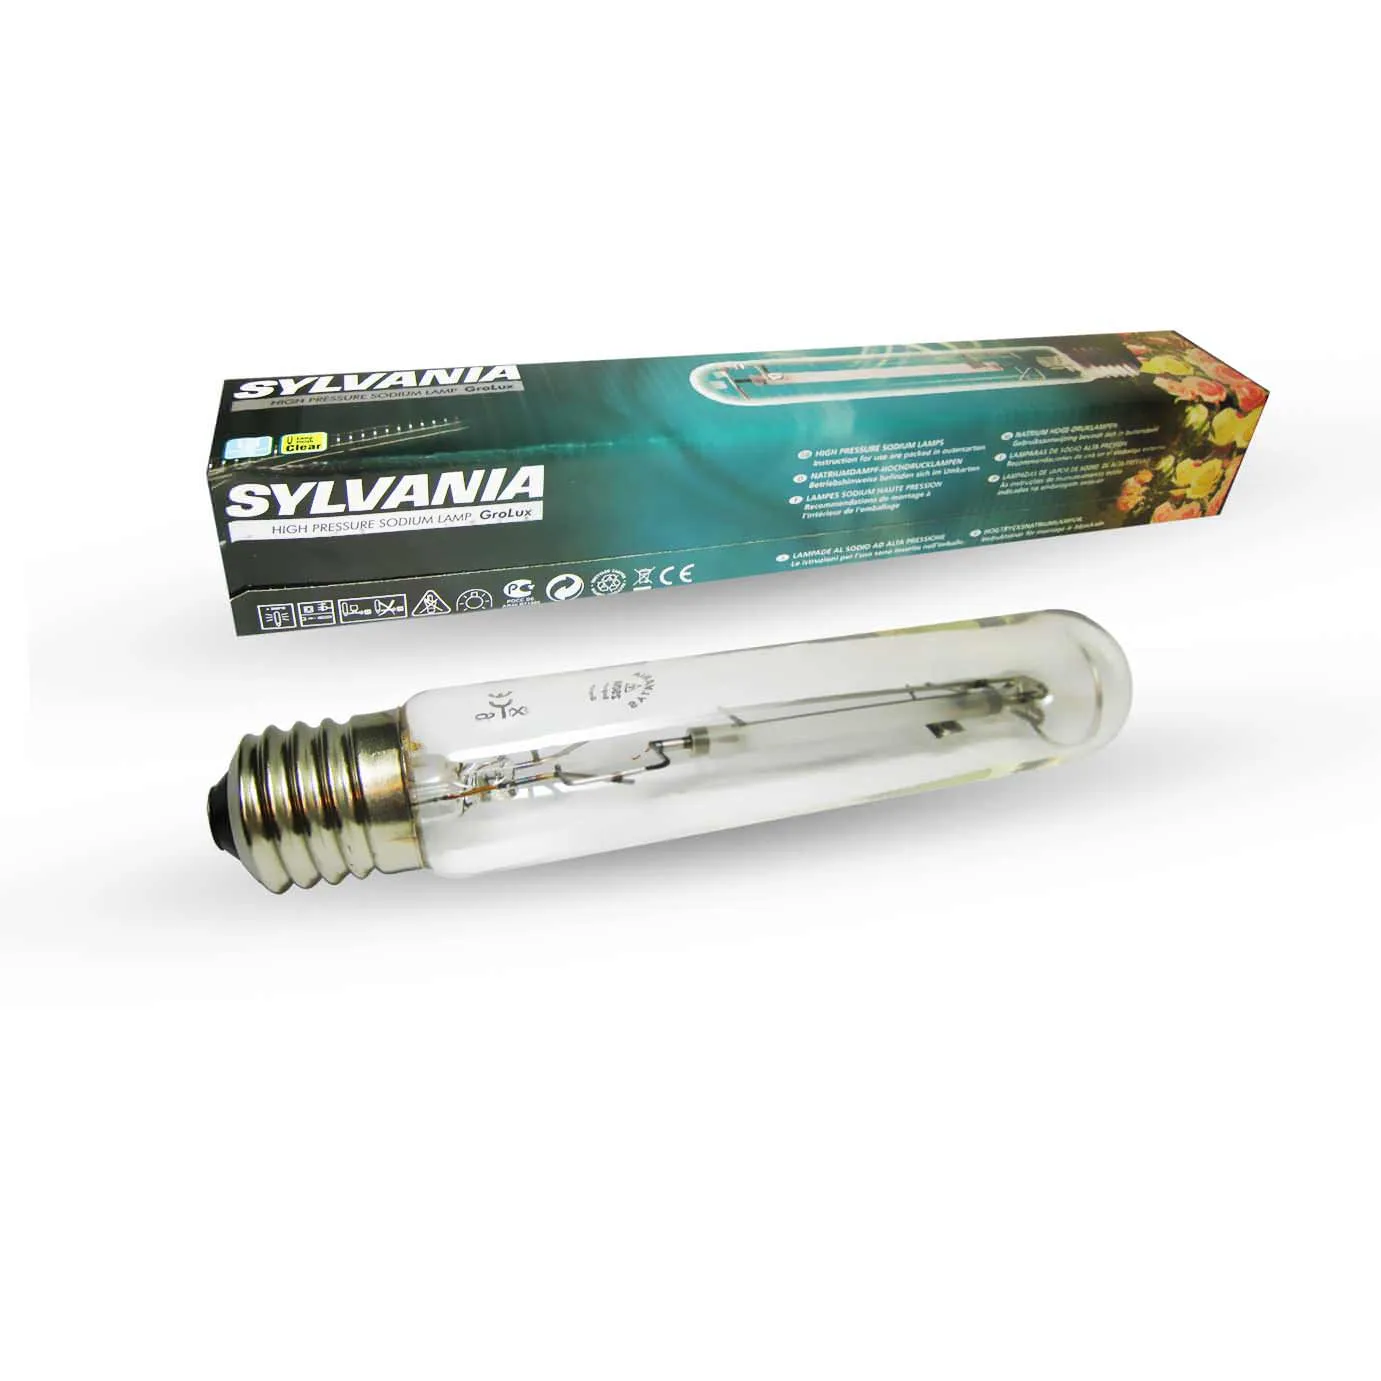 Лампа Sylvania GroLux 250W HSP - Dual